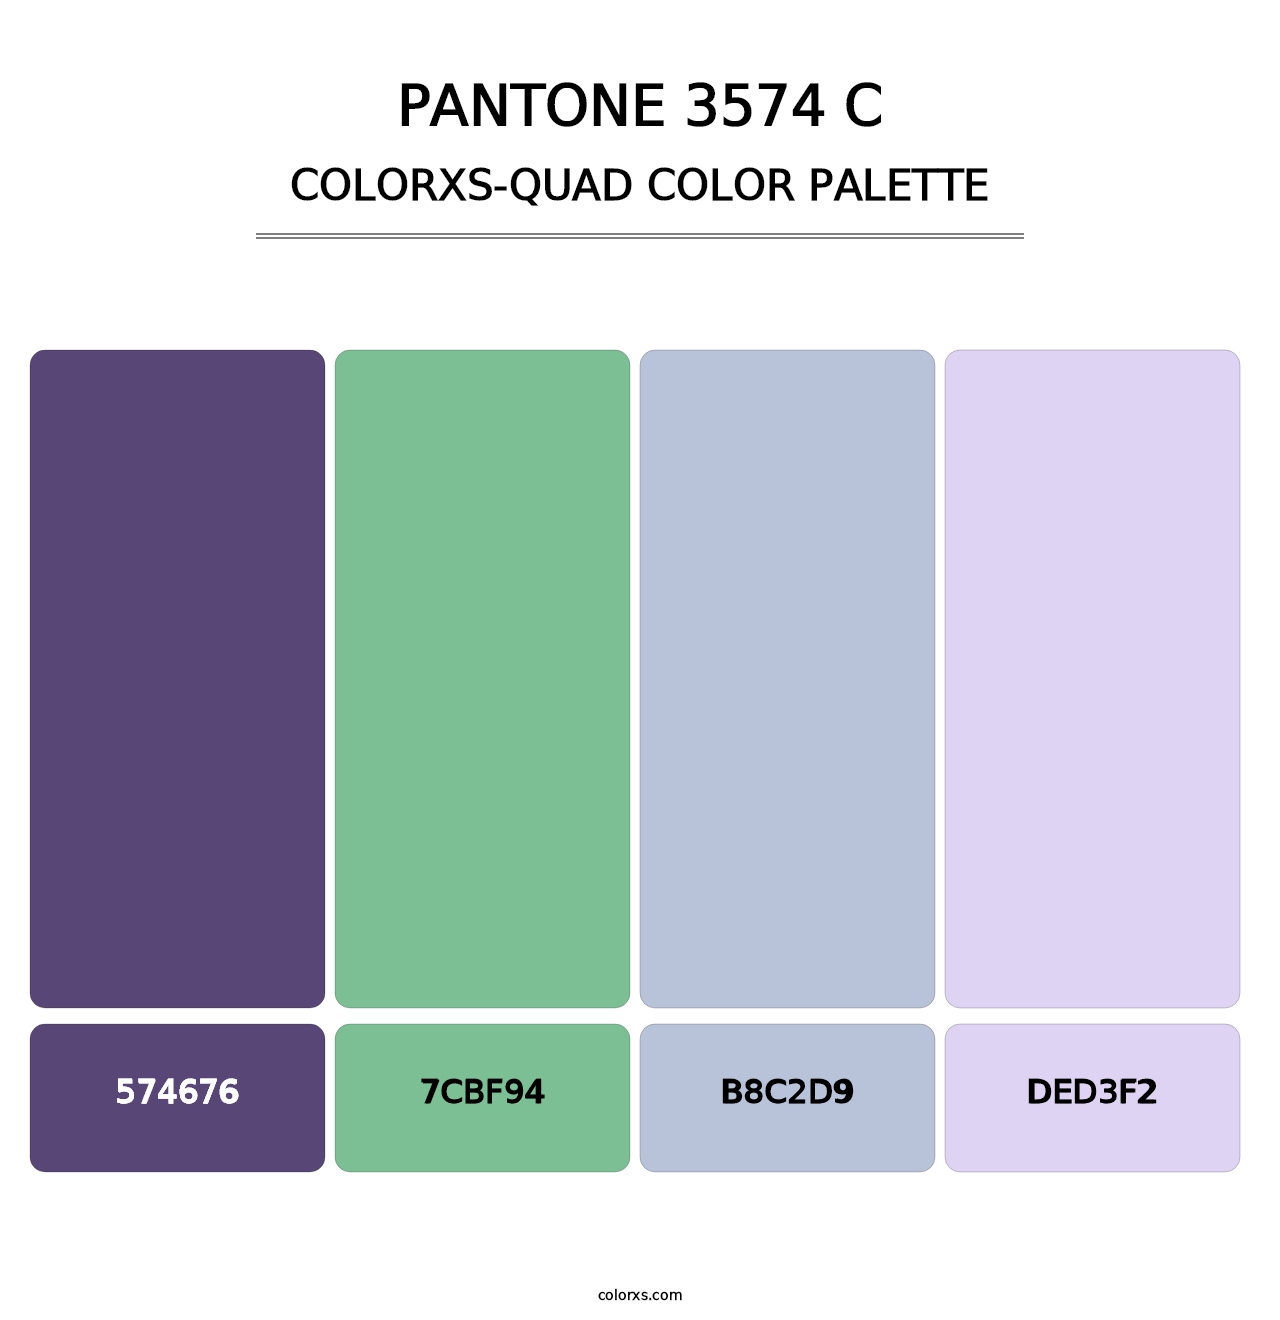 PANTONE 3574 C - Colorxs Quad Palette